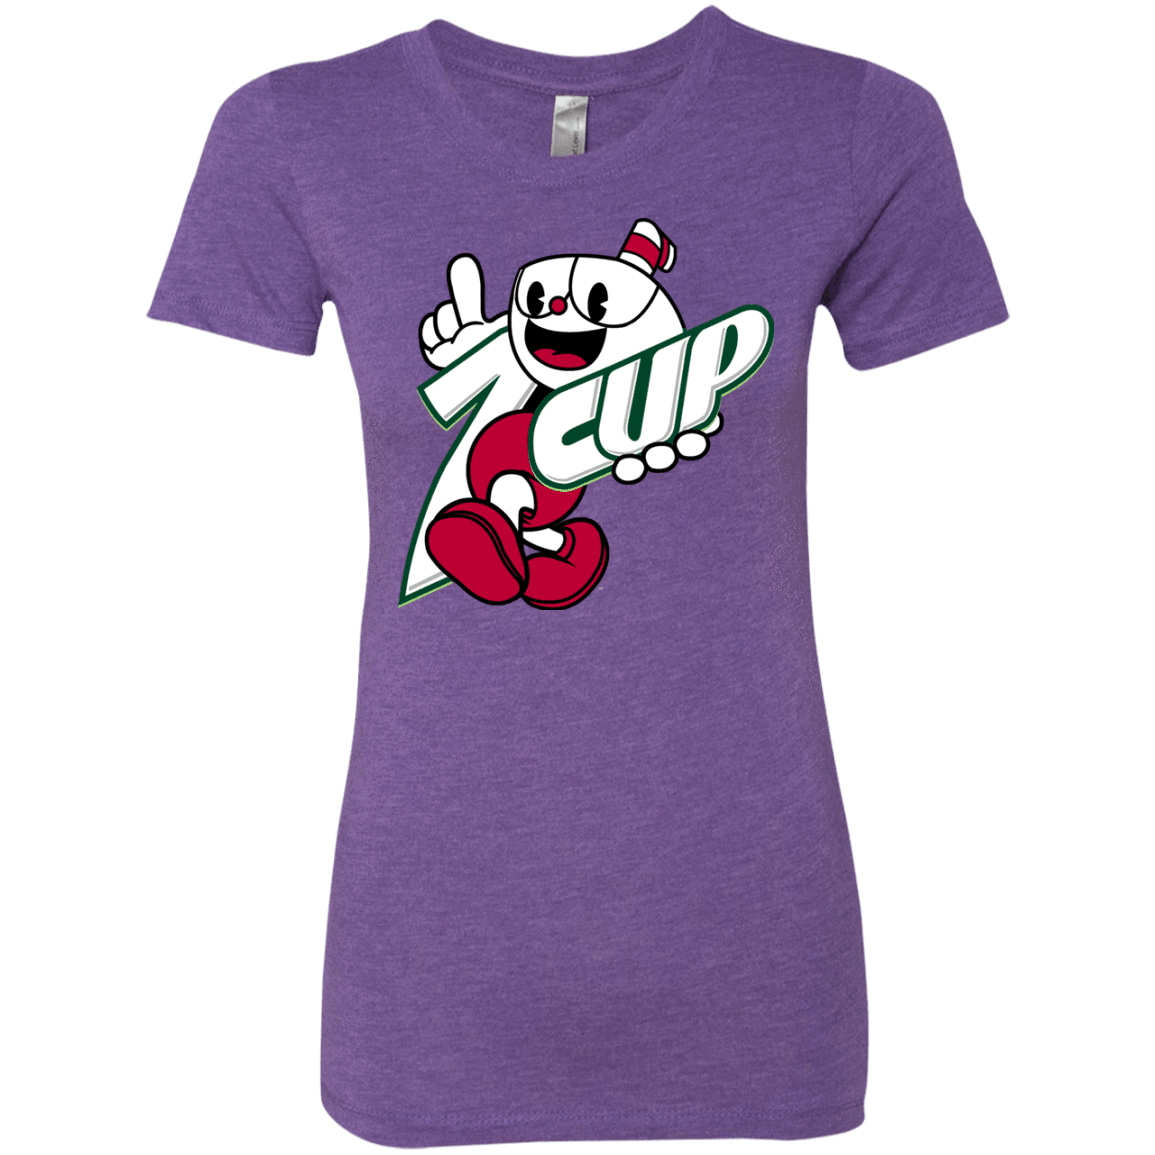 1cup Women's Triblend T-Shirt